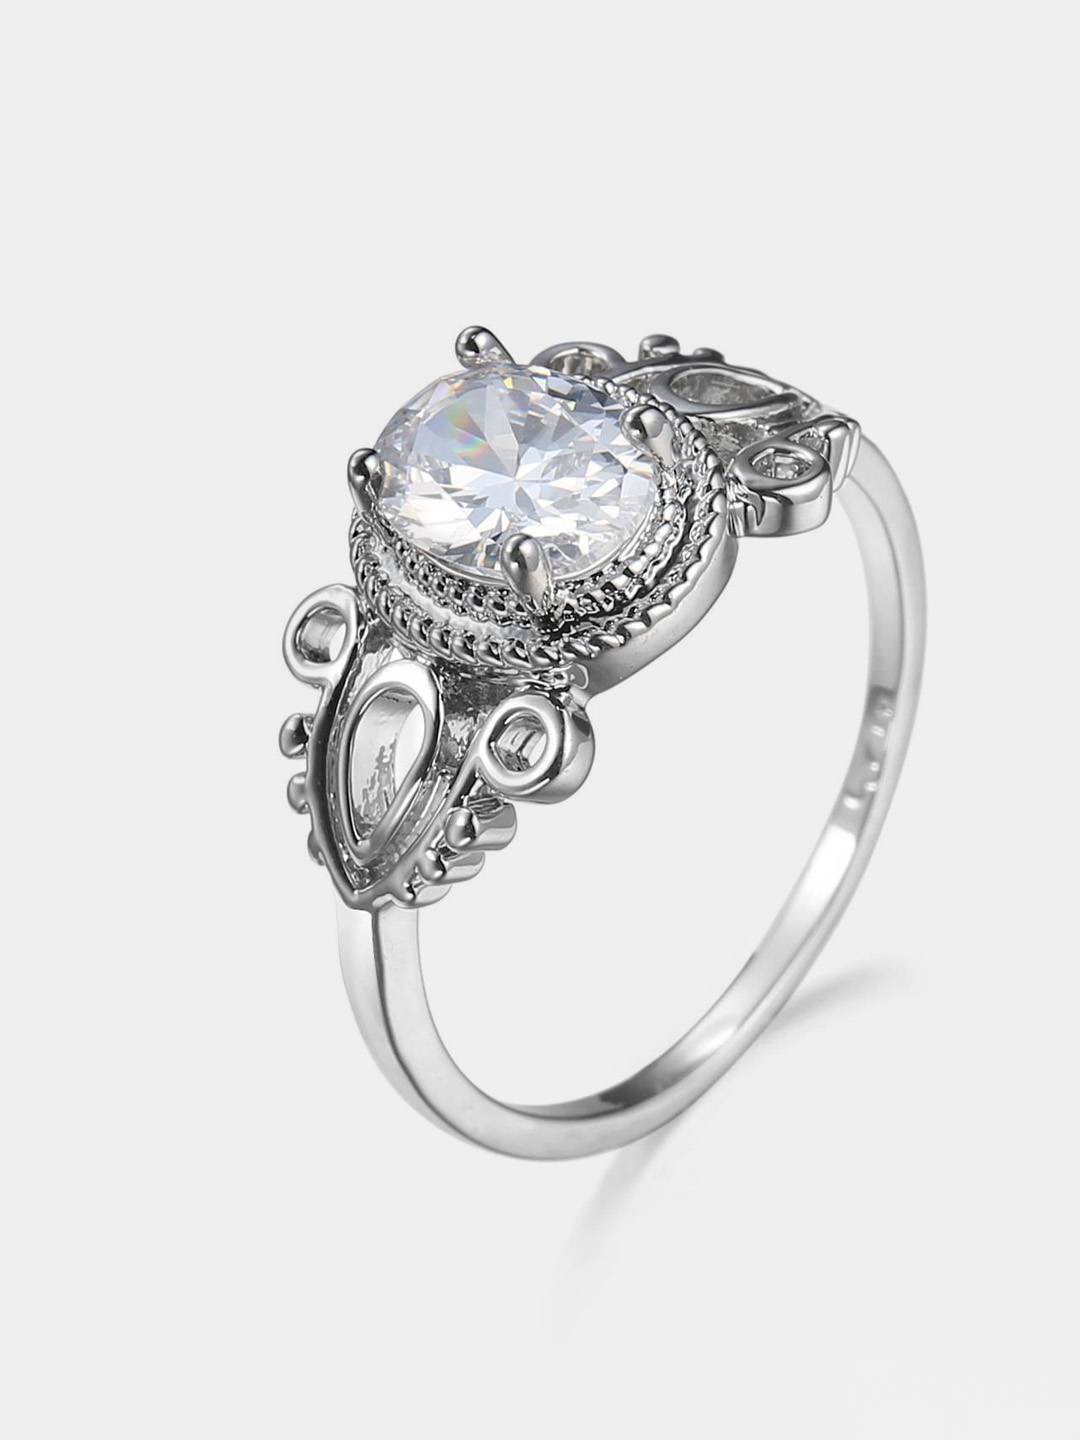 Изящное ажурное кольцо с цирконием купить по цене 165 ₽ в интернет-магазине KazanExpress